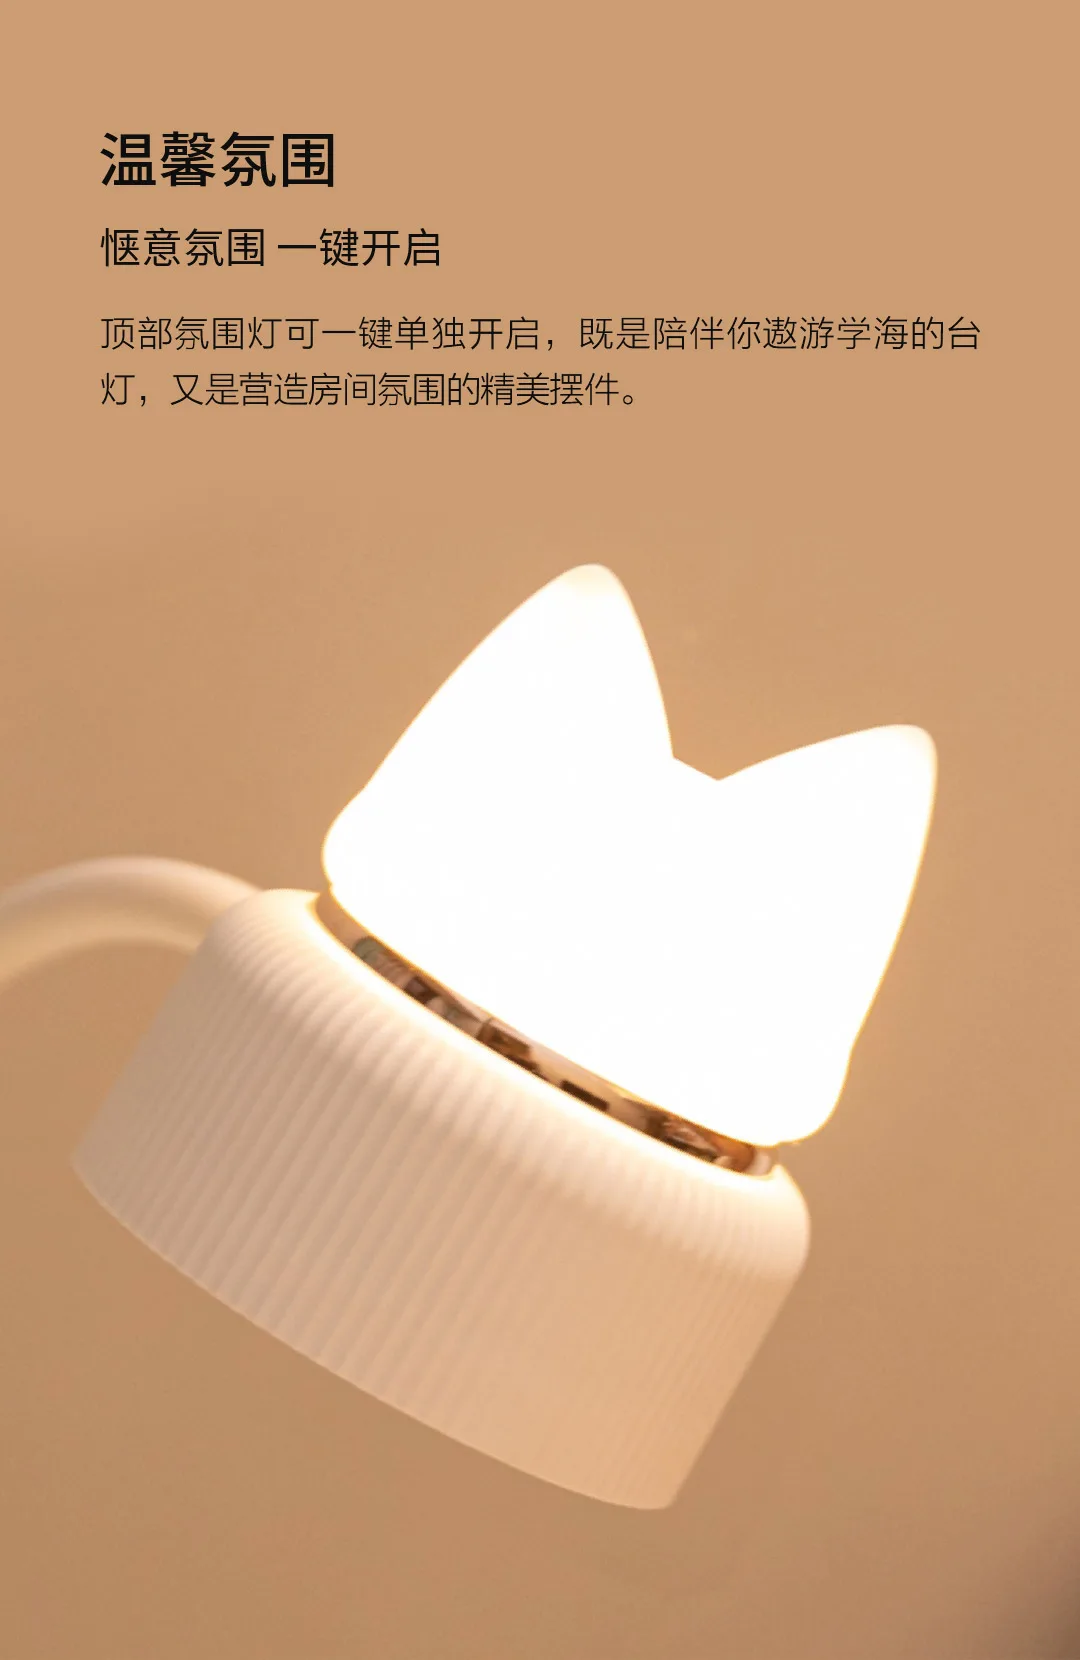 Xiaomi Bcase лампа для чтения с милым котиком светодиодный светильник 3-х уровневый Яркость настольная лампа низкого стандарт Blu-Ray без стробоскопа защита глаз для студентов